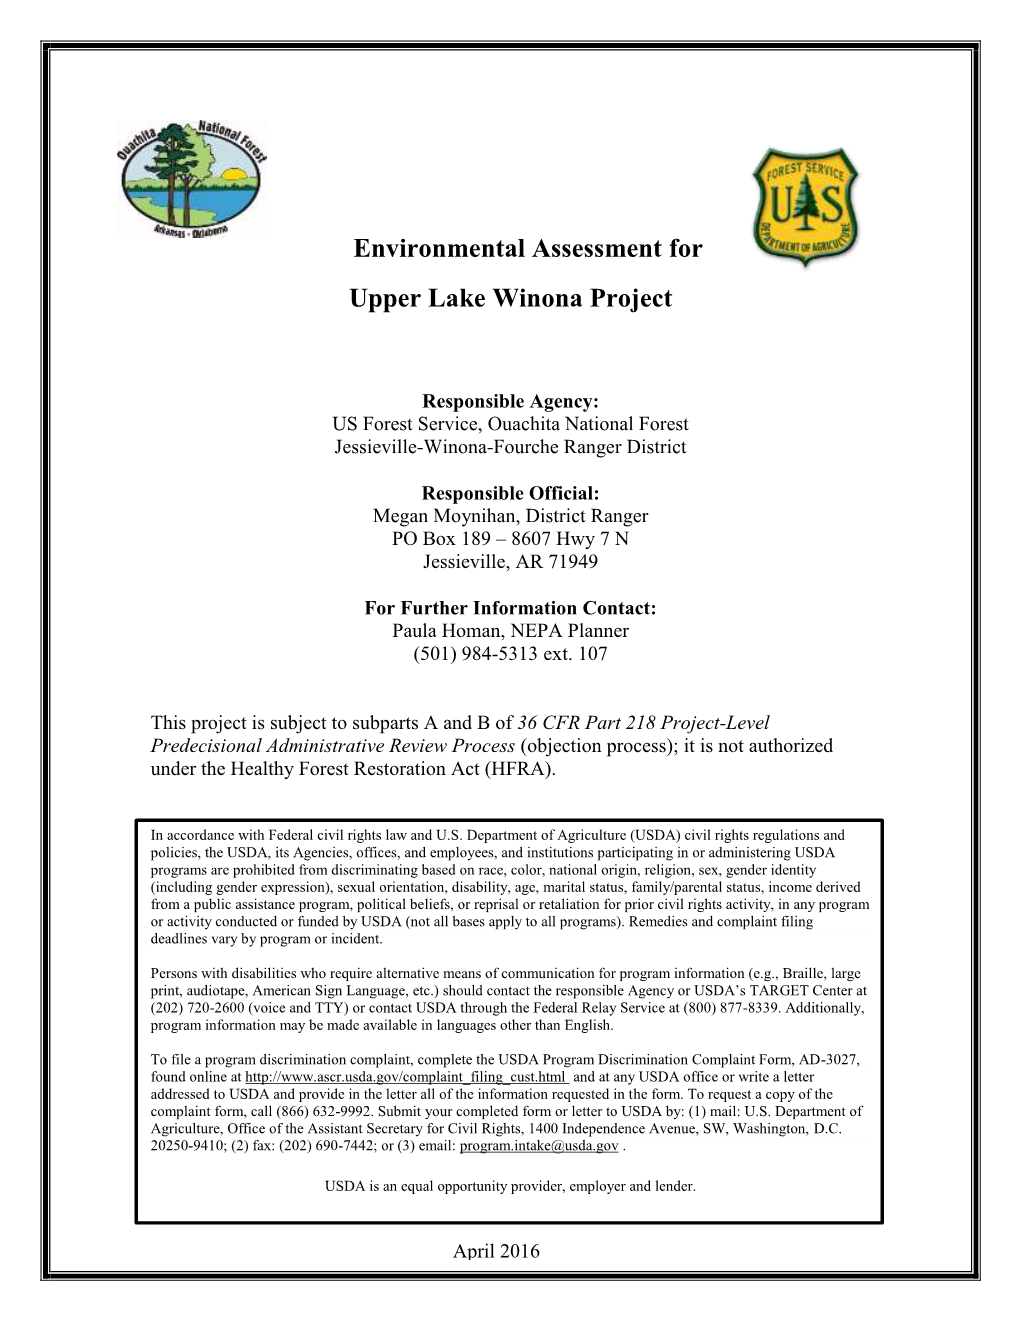 Environmental Assessment For